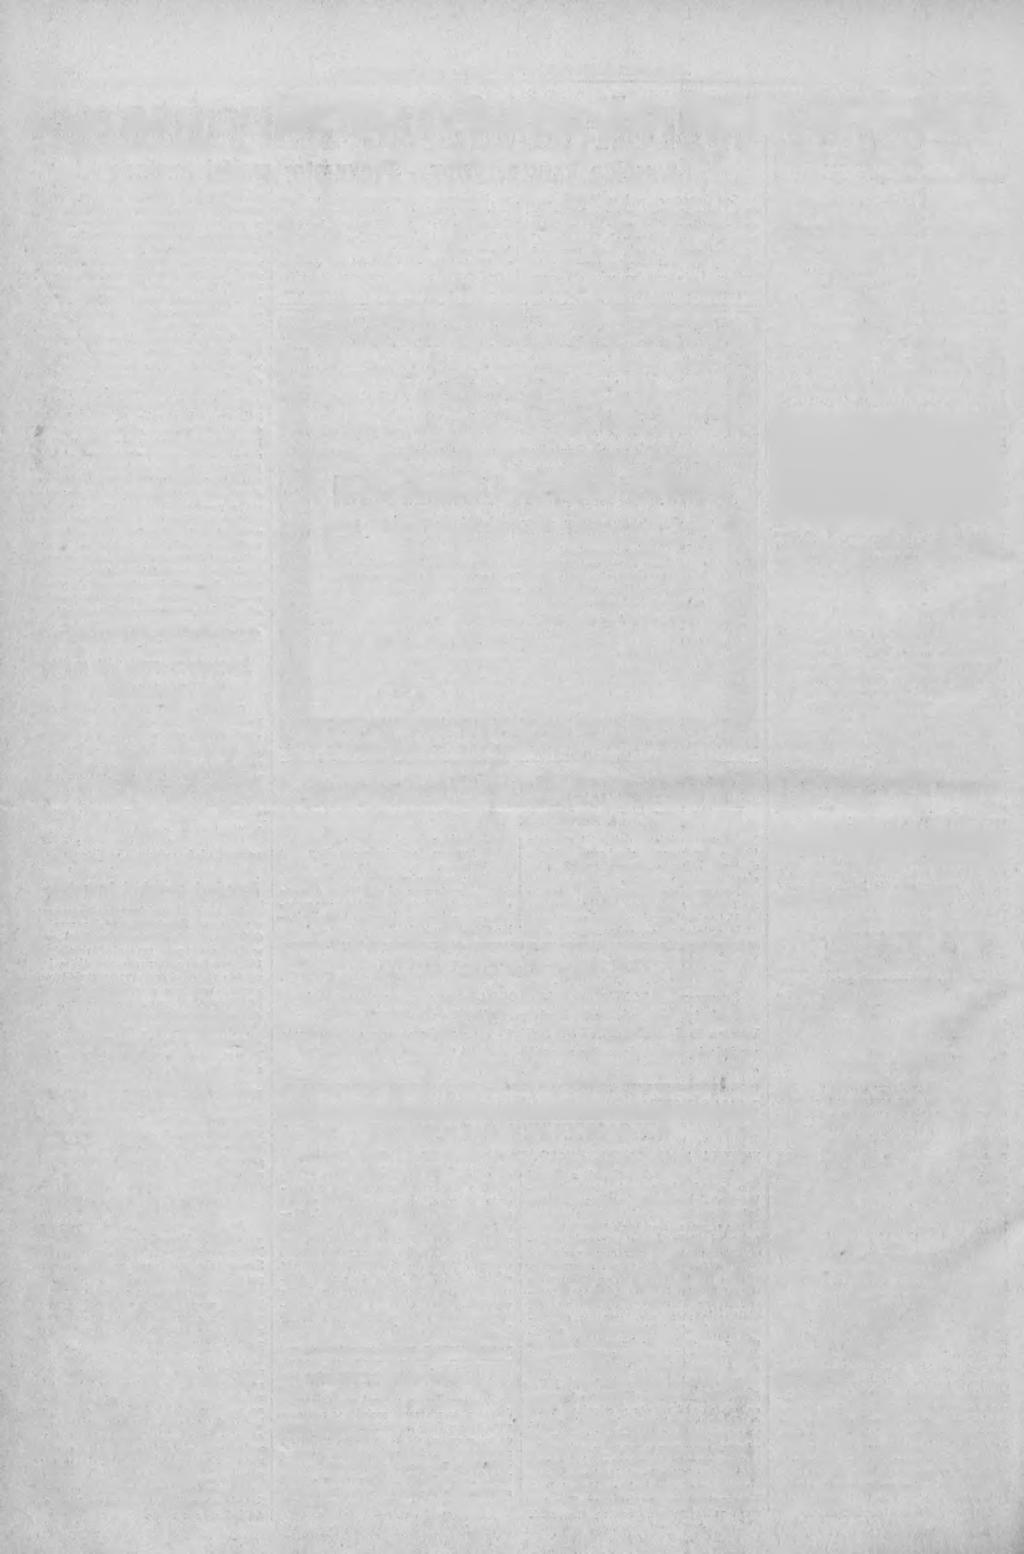 Str. 6 SLĄSKI KURJER PORANNY 25 stycznia 1936 roku Nr. 24 MIGAWKI. tok (redzie miał i lab bedzie chciał... Zaprawdę trzeba urodzić się w czepku, by w dzisiejszych czasach otrzymać posadę.